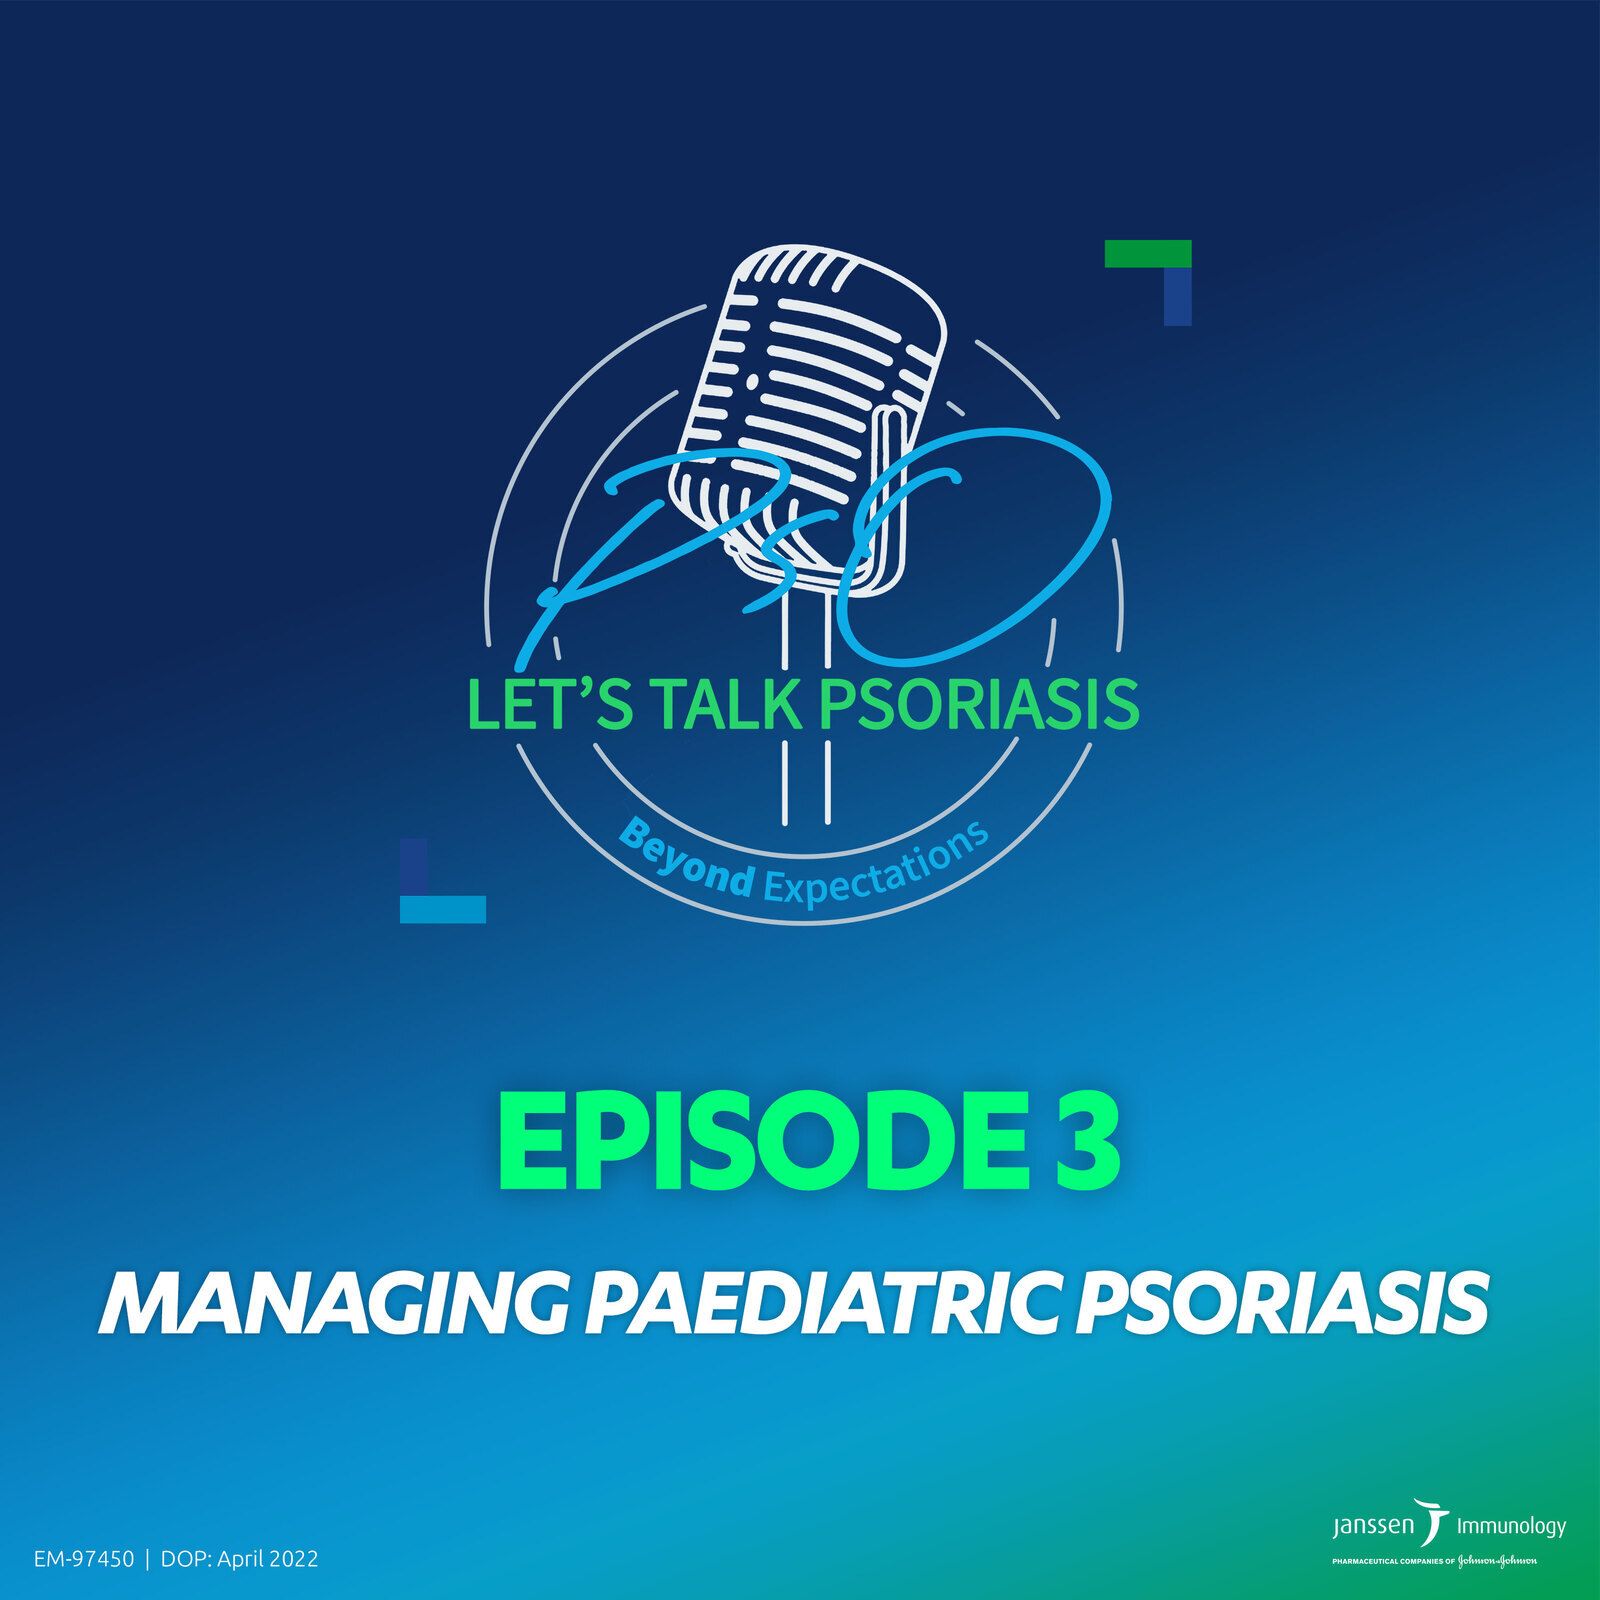 3: Episode 3 - Managing paediatric psoriasis